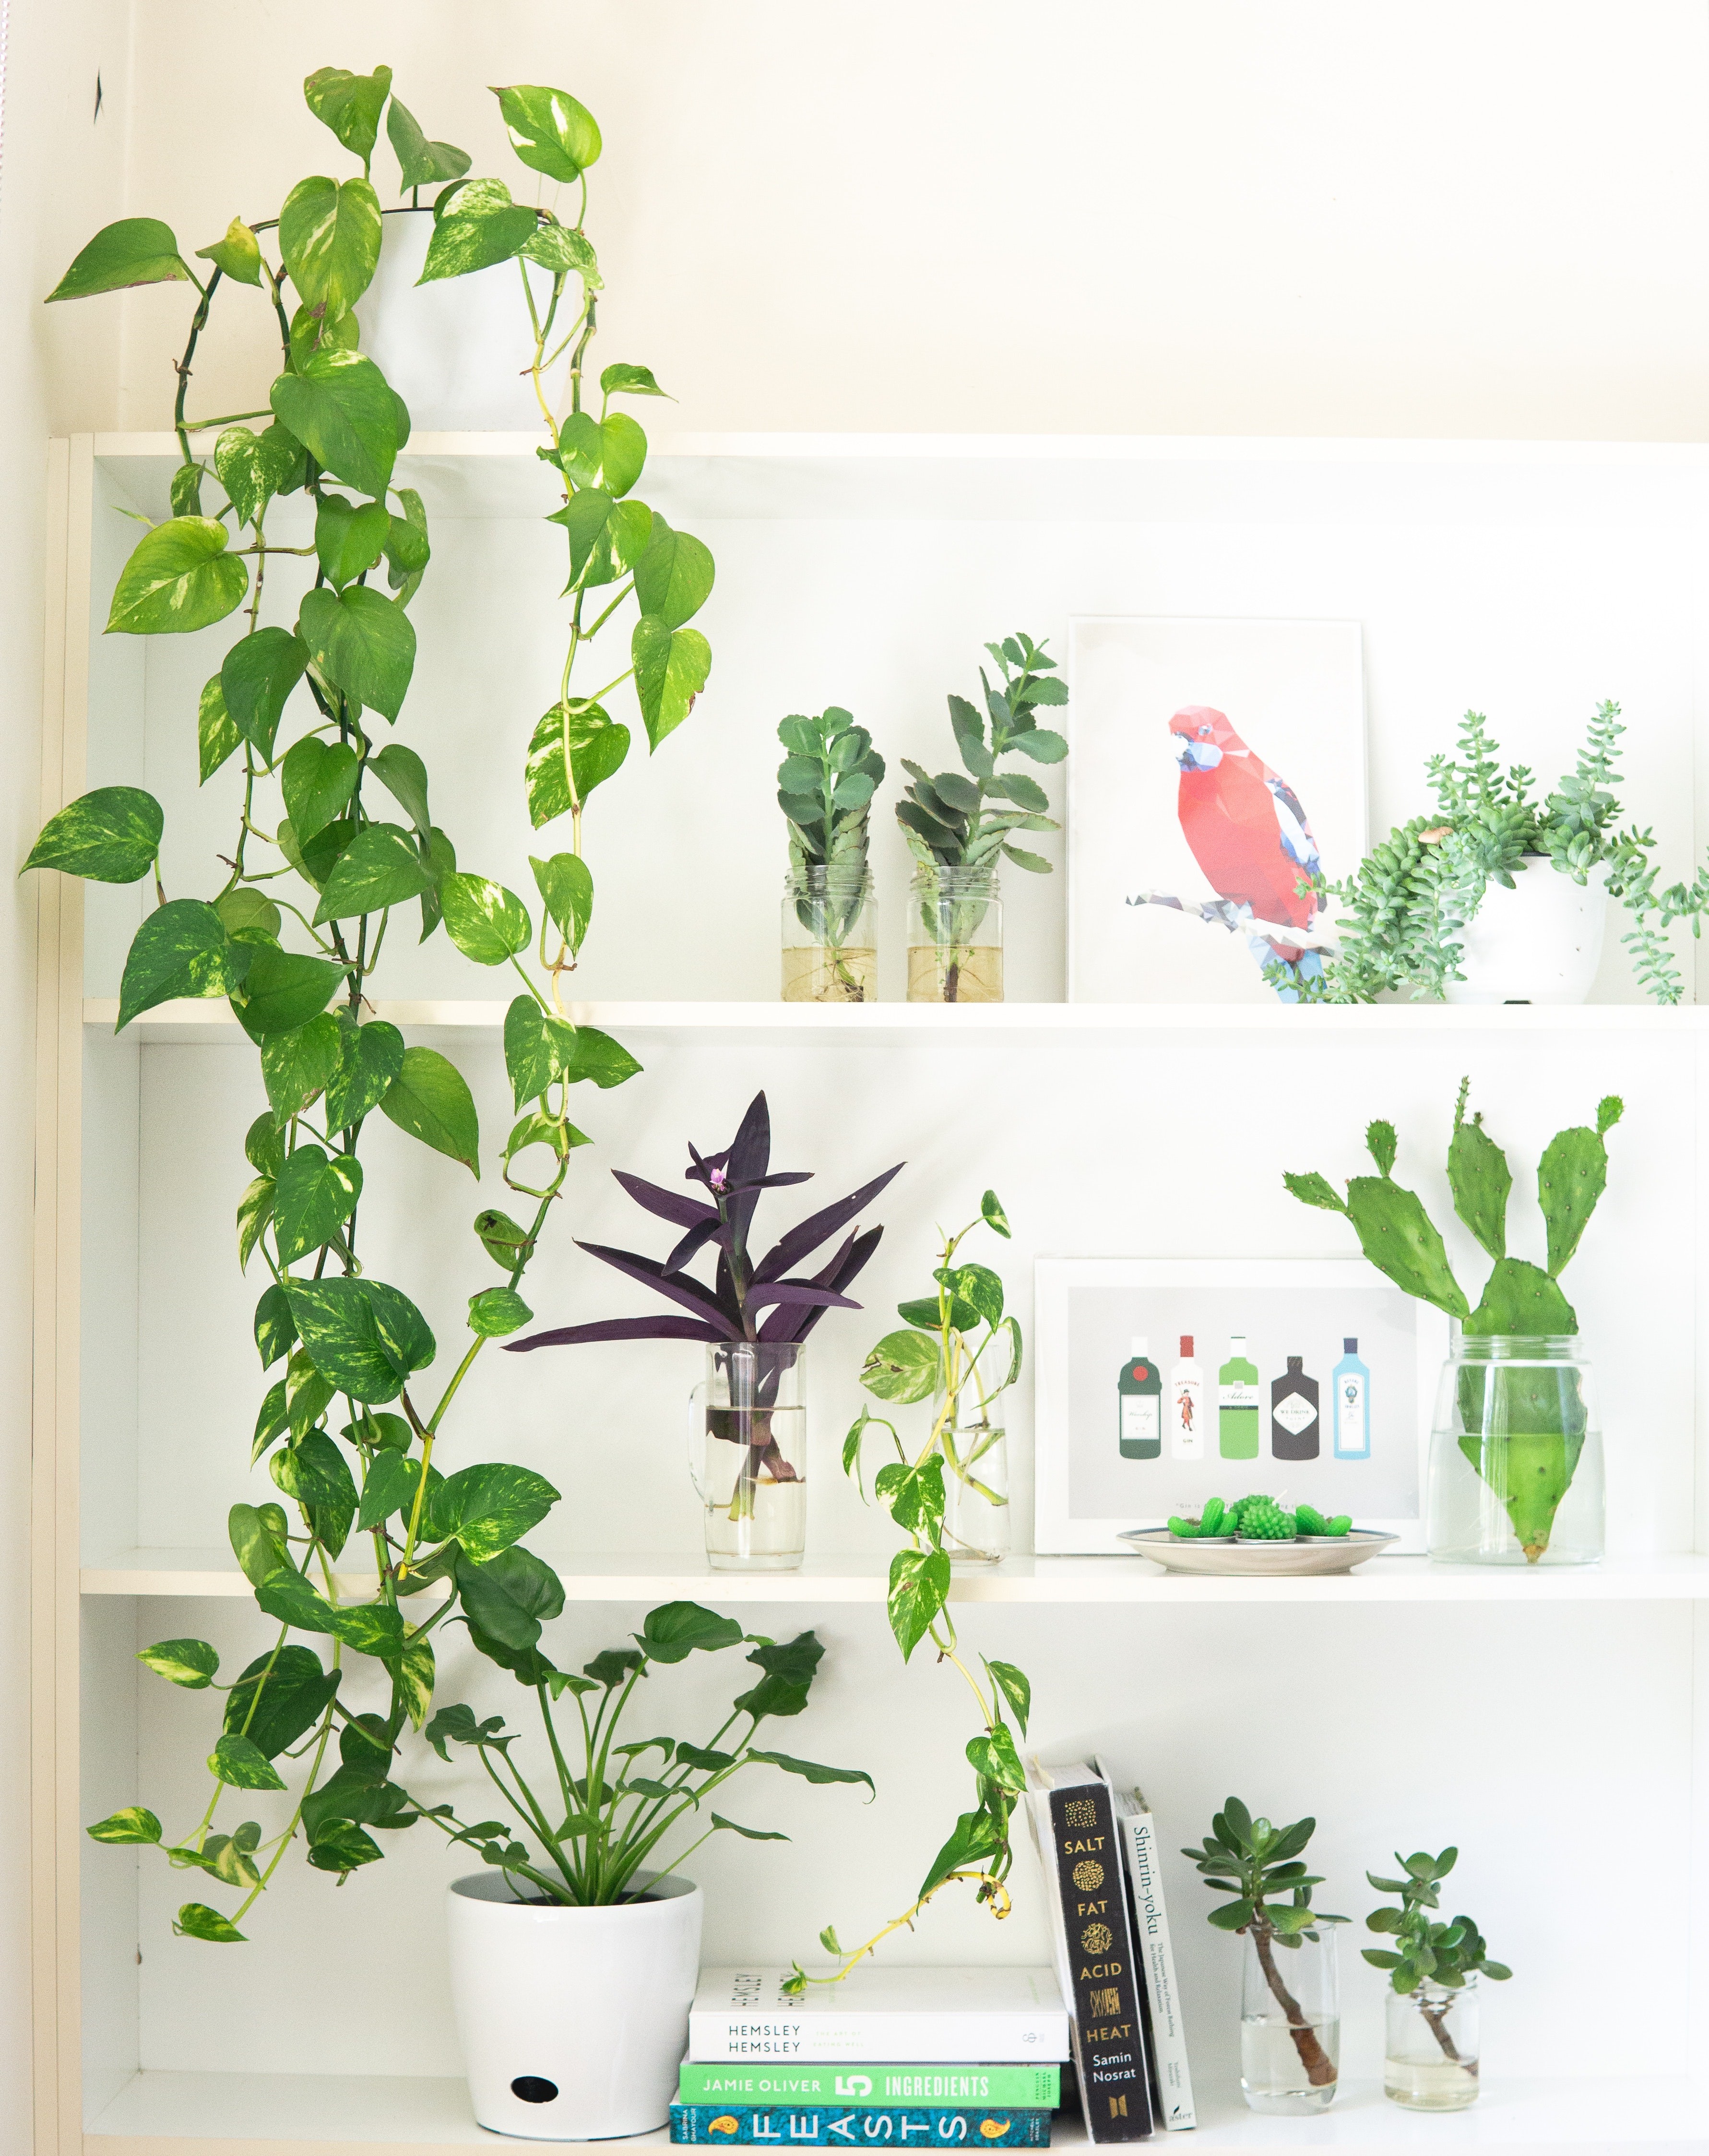 É possível escolher a planta doméstica de acordo com a decoração de sua casa (Foto: Pexels / Elle Hughes / CreativeCommons)